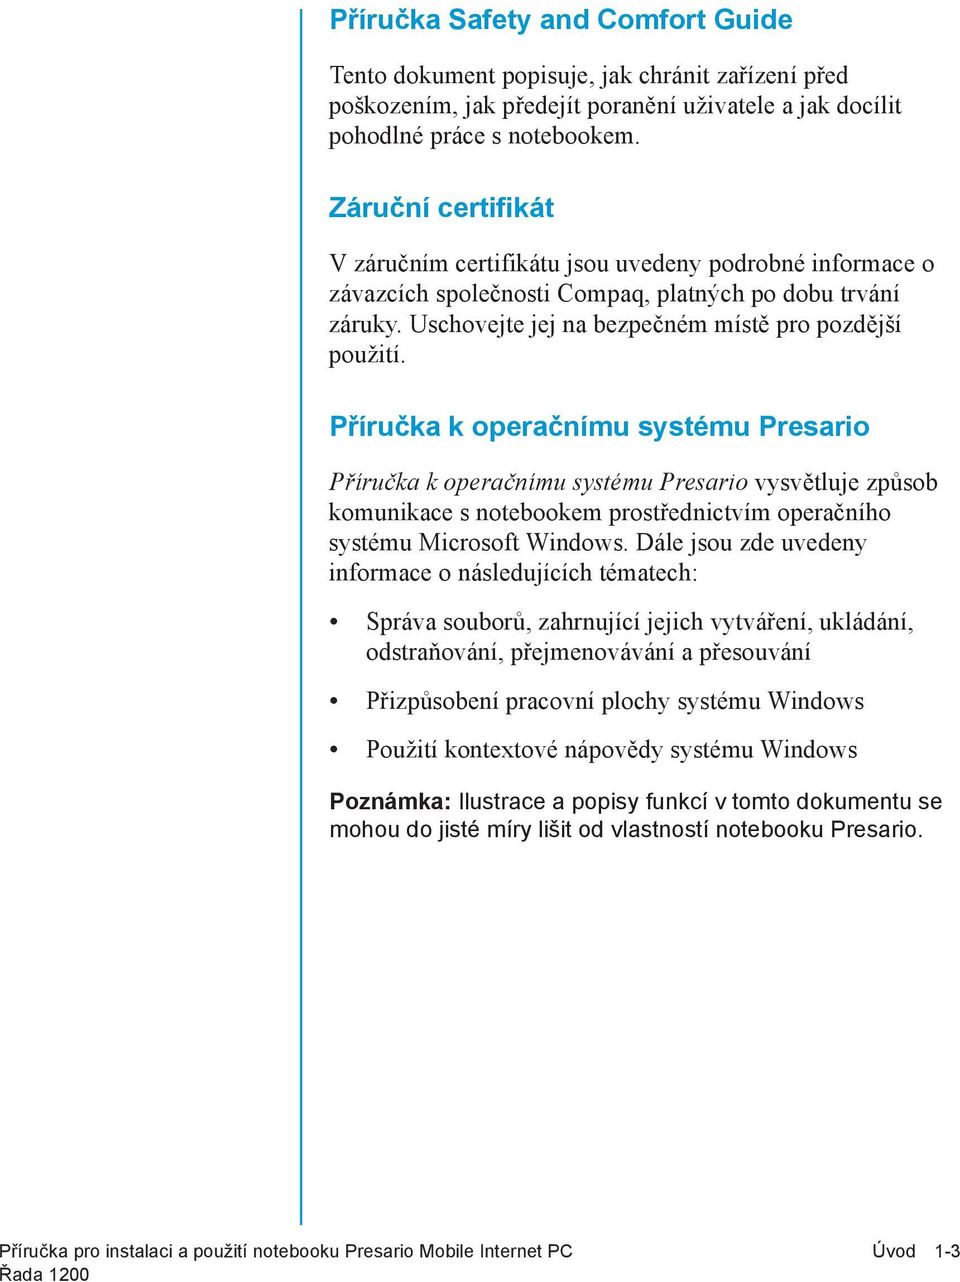 Příručka k operačnímu systému Presario Příručka k operačnímu systému Presario vysvětluje způsob komunikace s notebookem prostřednictvím operačního systému Microsoft Windows.